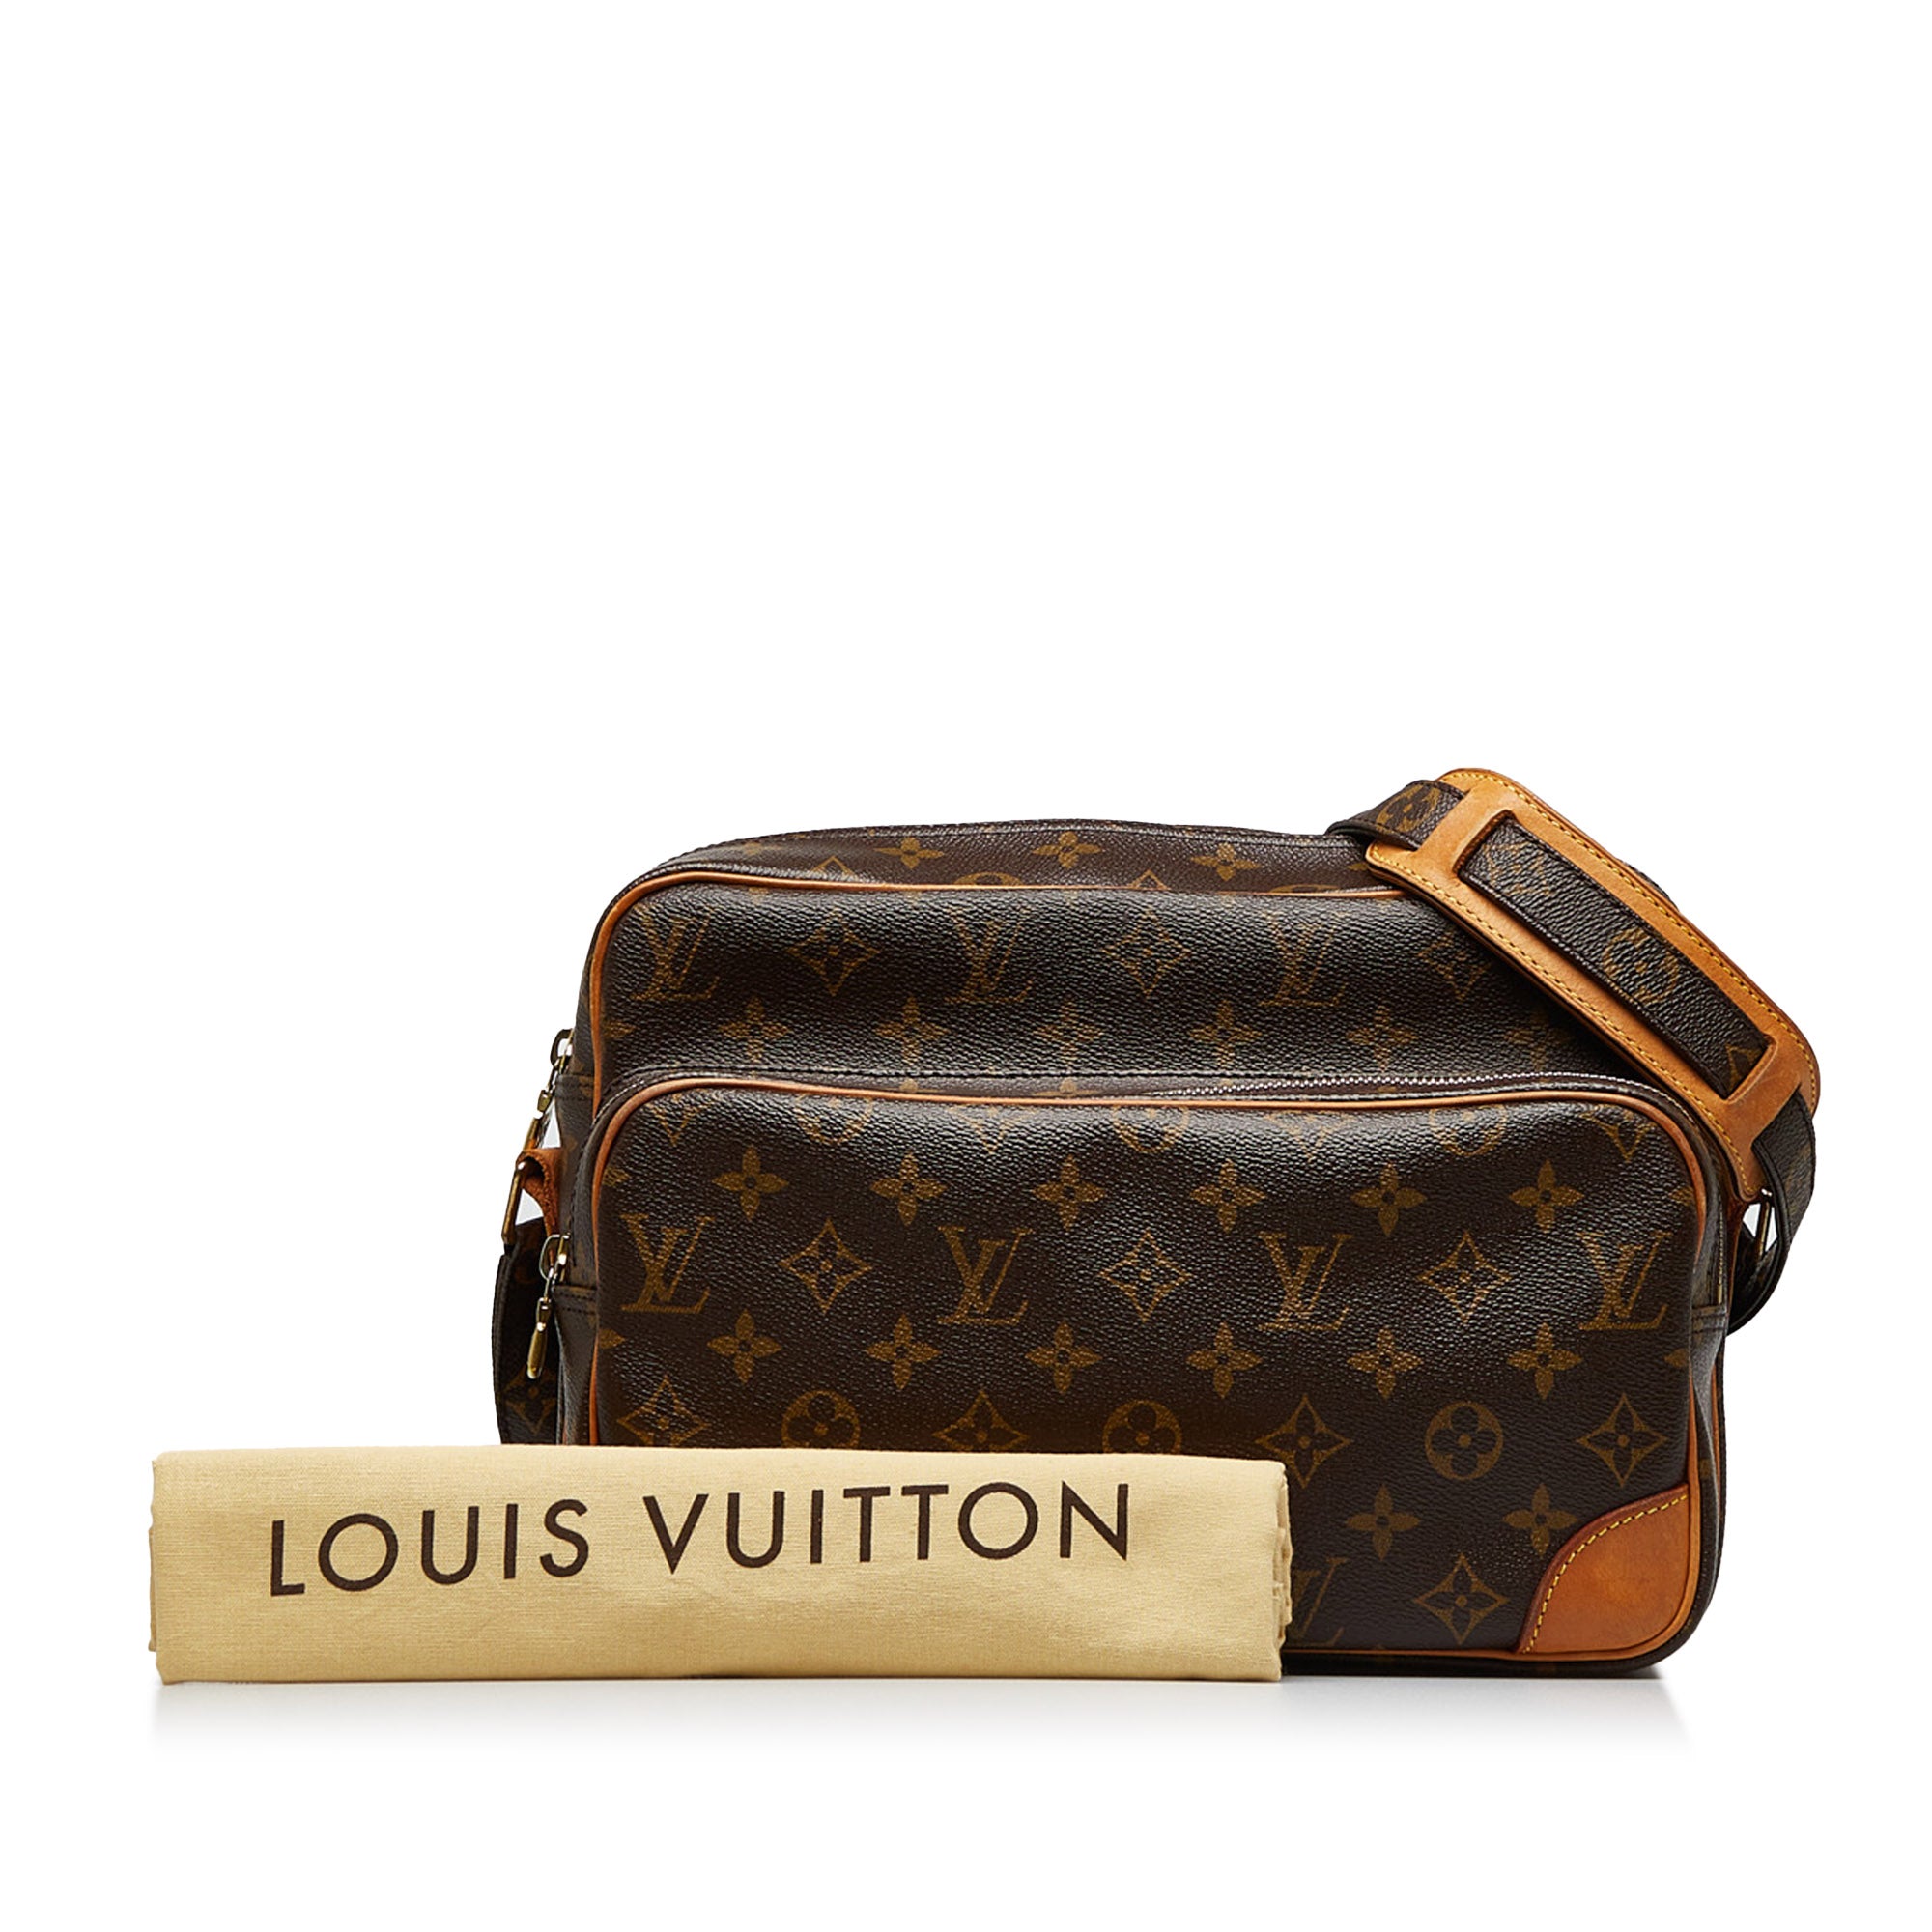 Louis Vuitton Nile crossbody